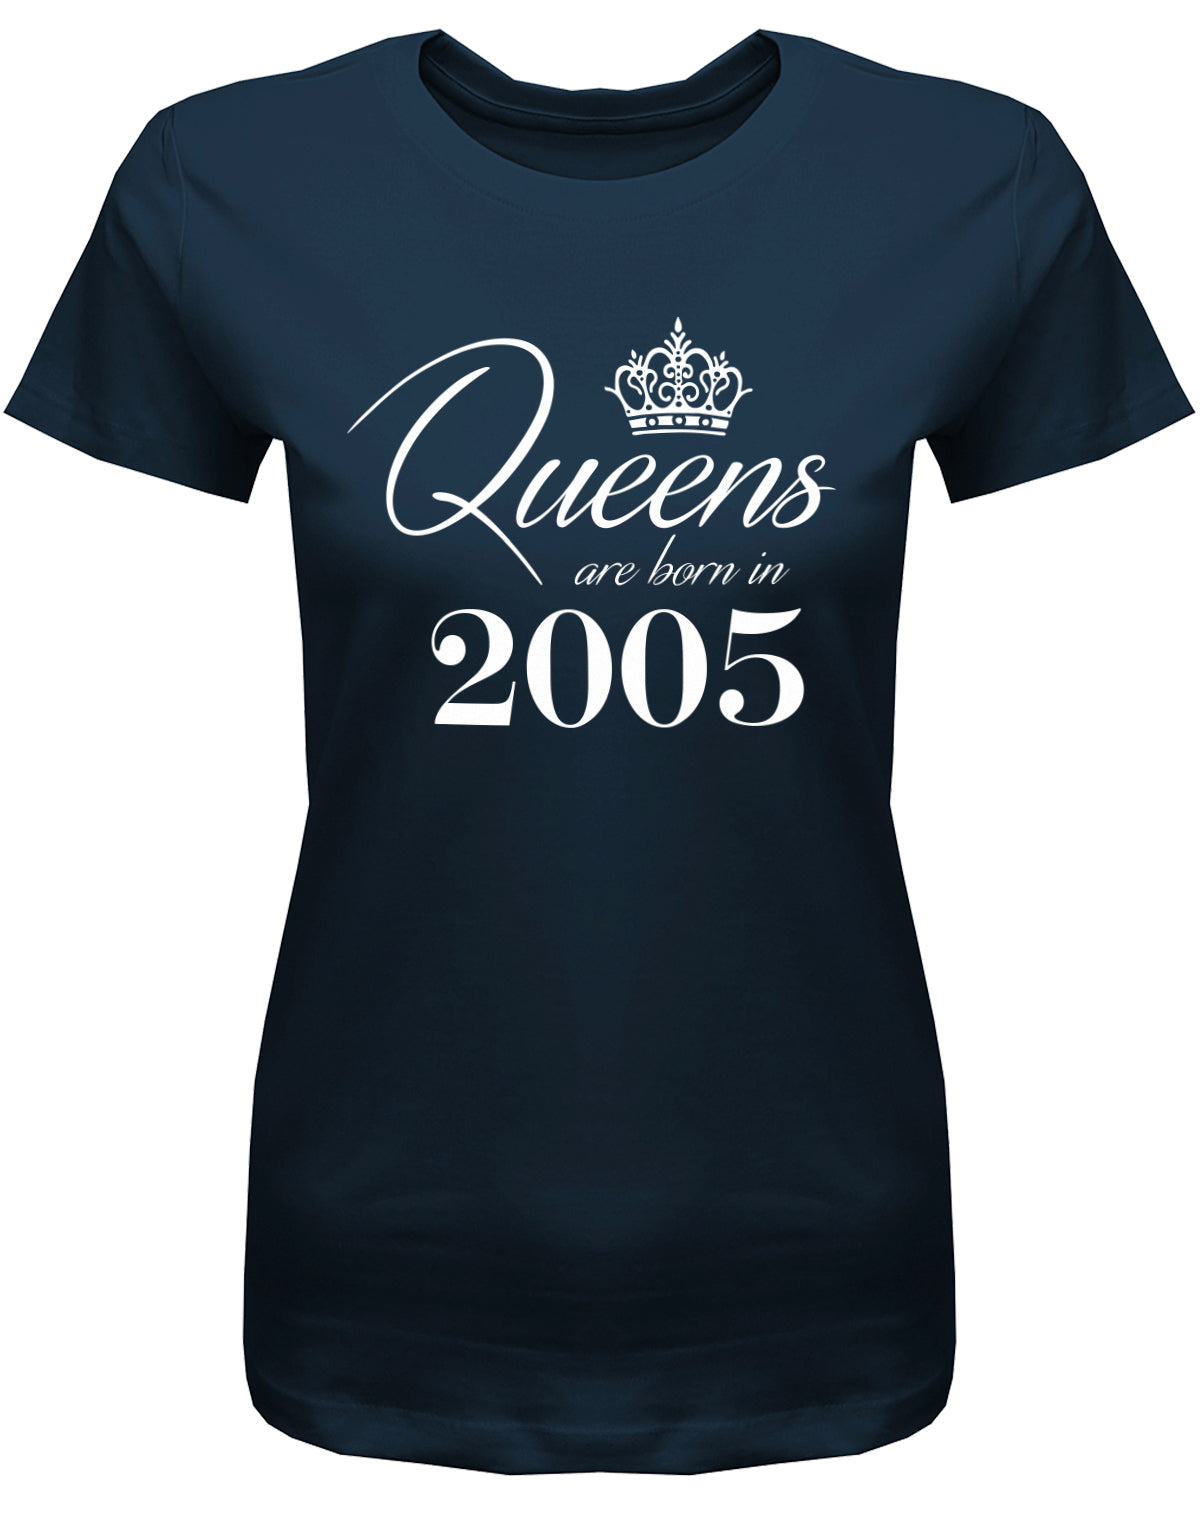 Lustiges T-Shirt zum 18. Geburtstag Mädchen. Bedruckt mit: Queens are born in 2005 - Königin wurden 2005 geboren. Das T Shirt 18 Geburtstag Mädchen Lustig ist ein tolles Geschenk für alle 18 Jährigen. Man wird nur einmal 18 Jahre. Geschenk zum 18 geburtstag Frau ✓ 2005 geburtstag Frau ✓ 18 Geburtstag tshirt ✓ shirt geburtstag 18 Navy